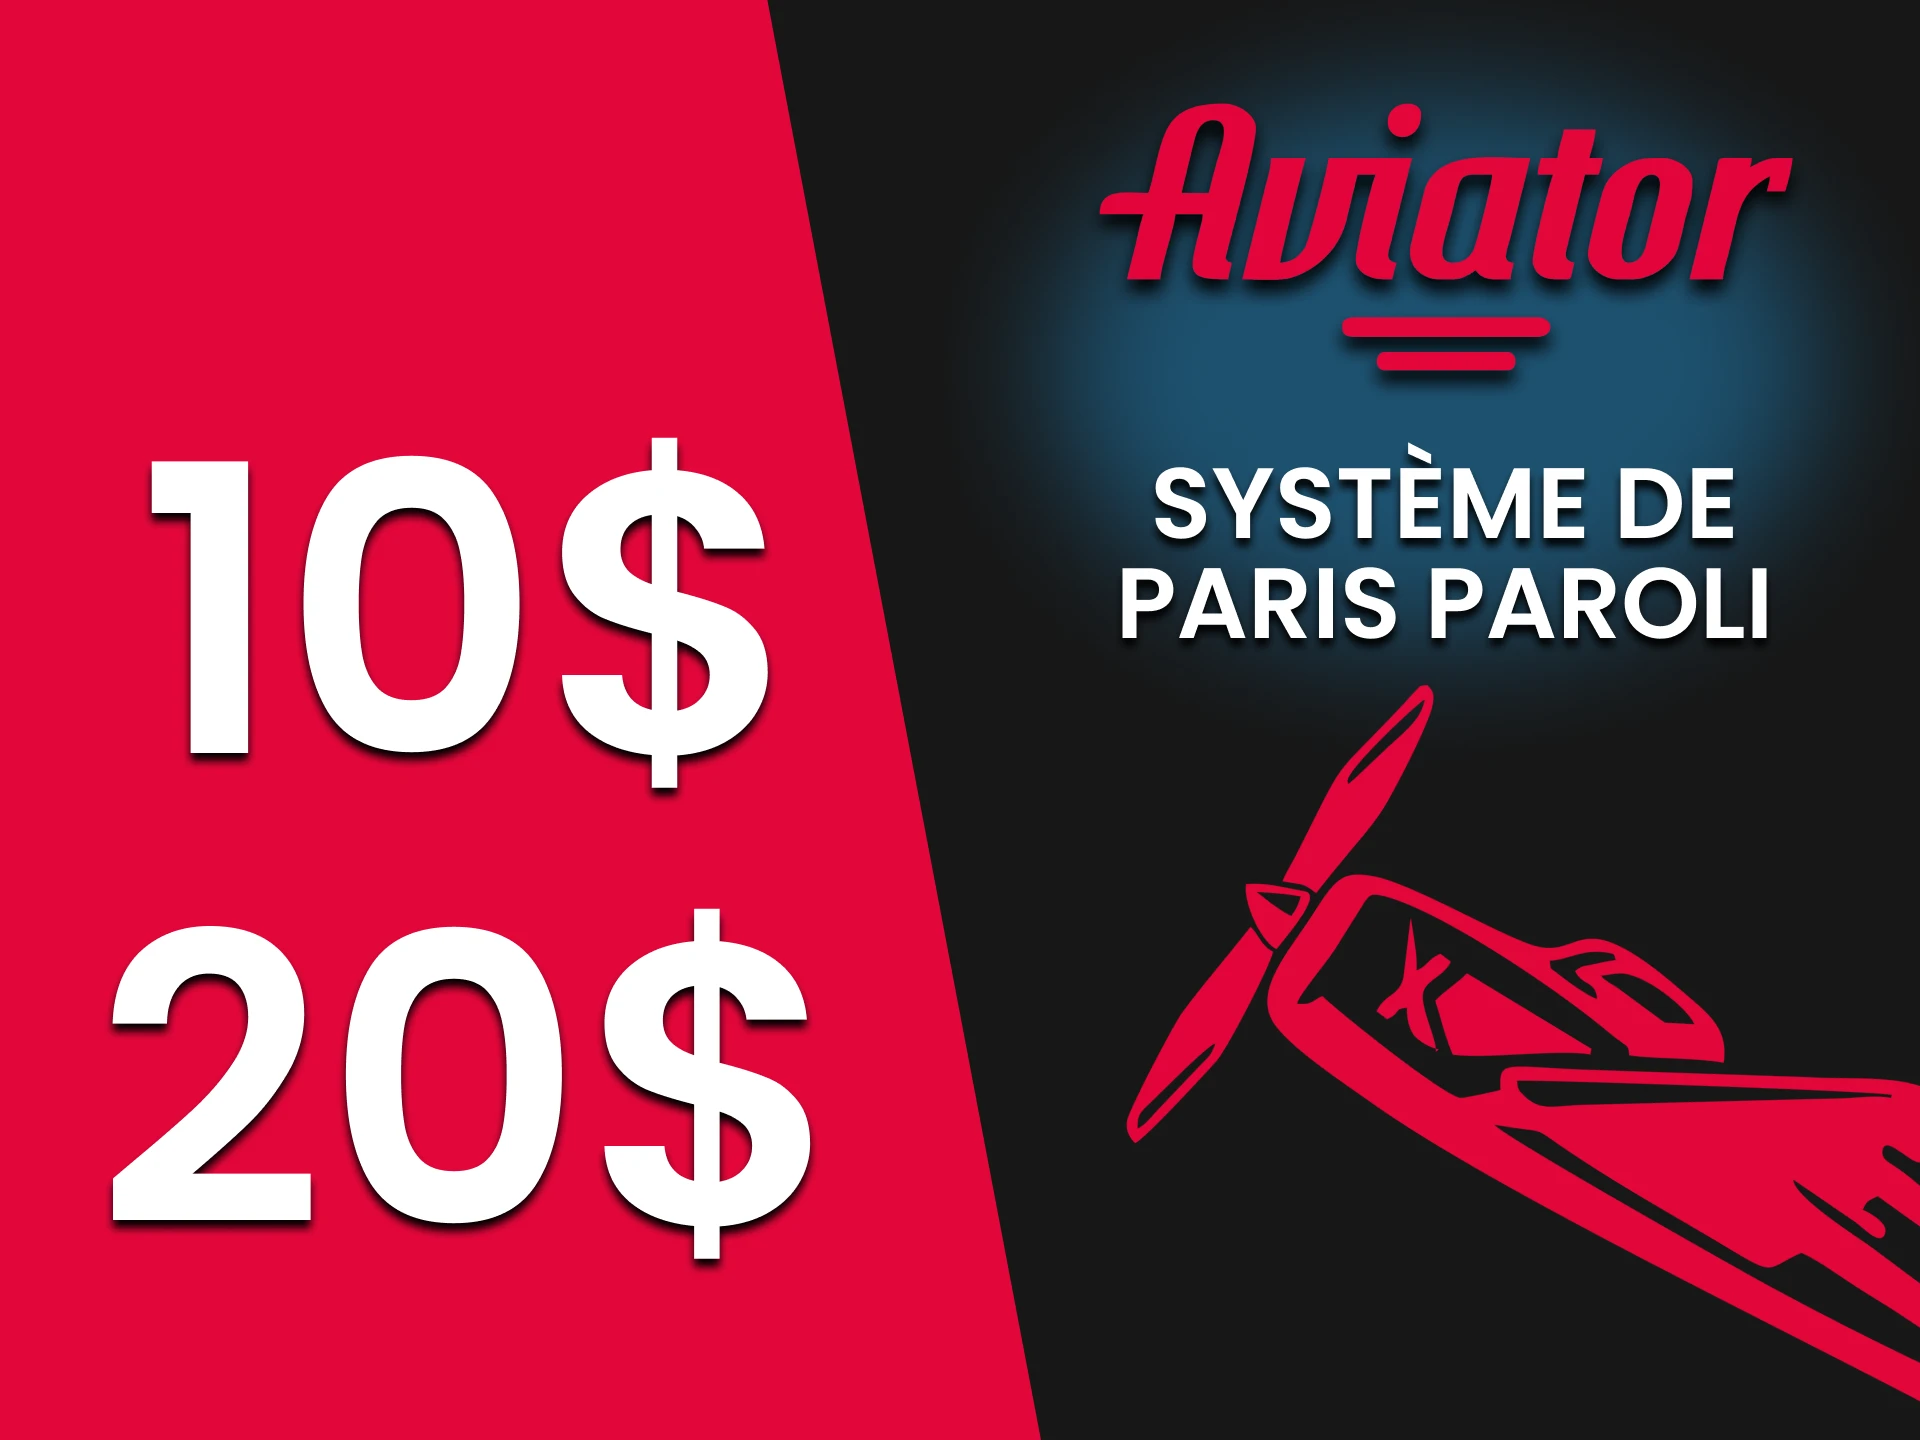 Nous vous recommandons de jouer à Aviator en utilisant les tactiques Systeme de Paris Paroli.